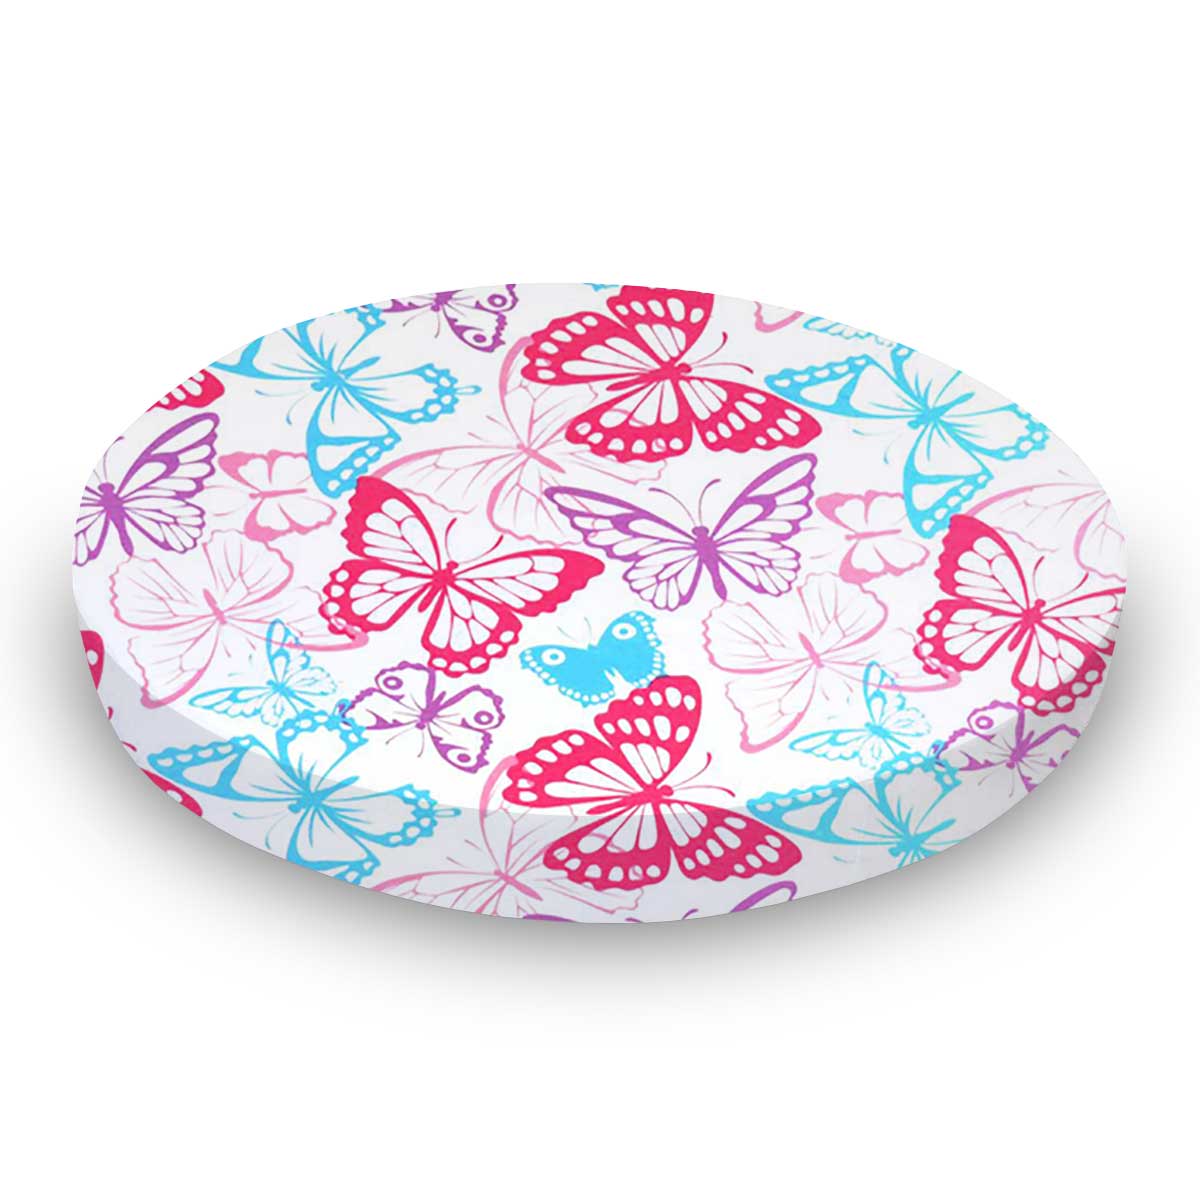 Oval Crib (Stokke Sleepi) - Butterflies Jersey Knit - Fitted  Oval